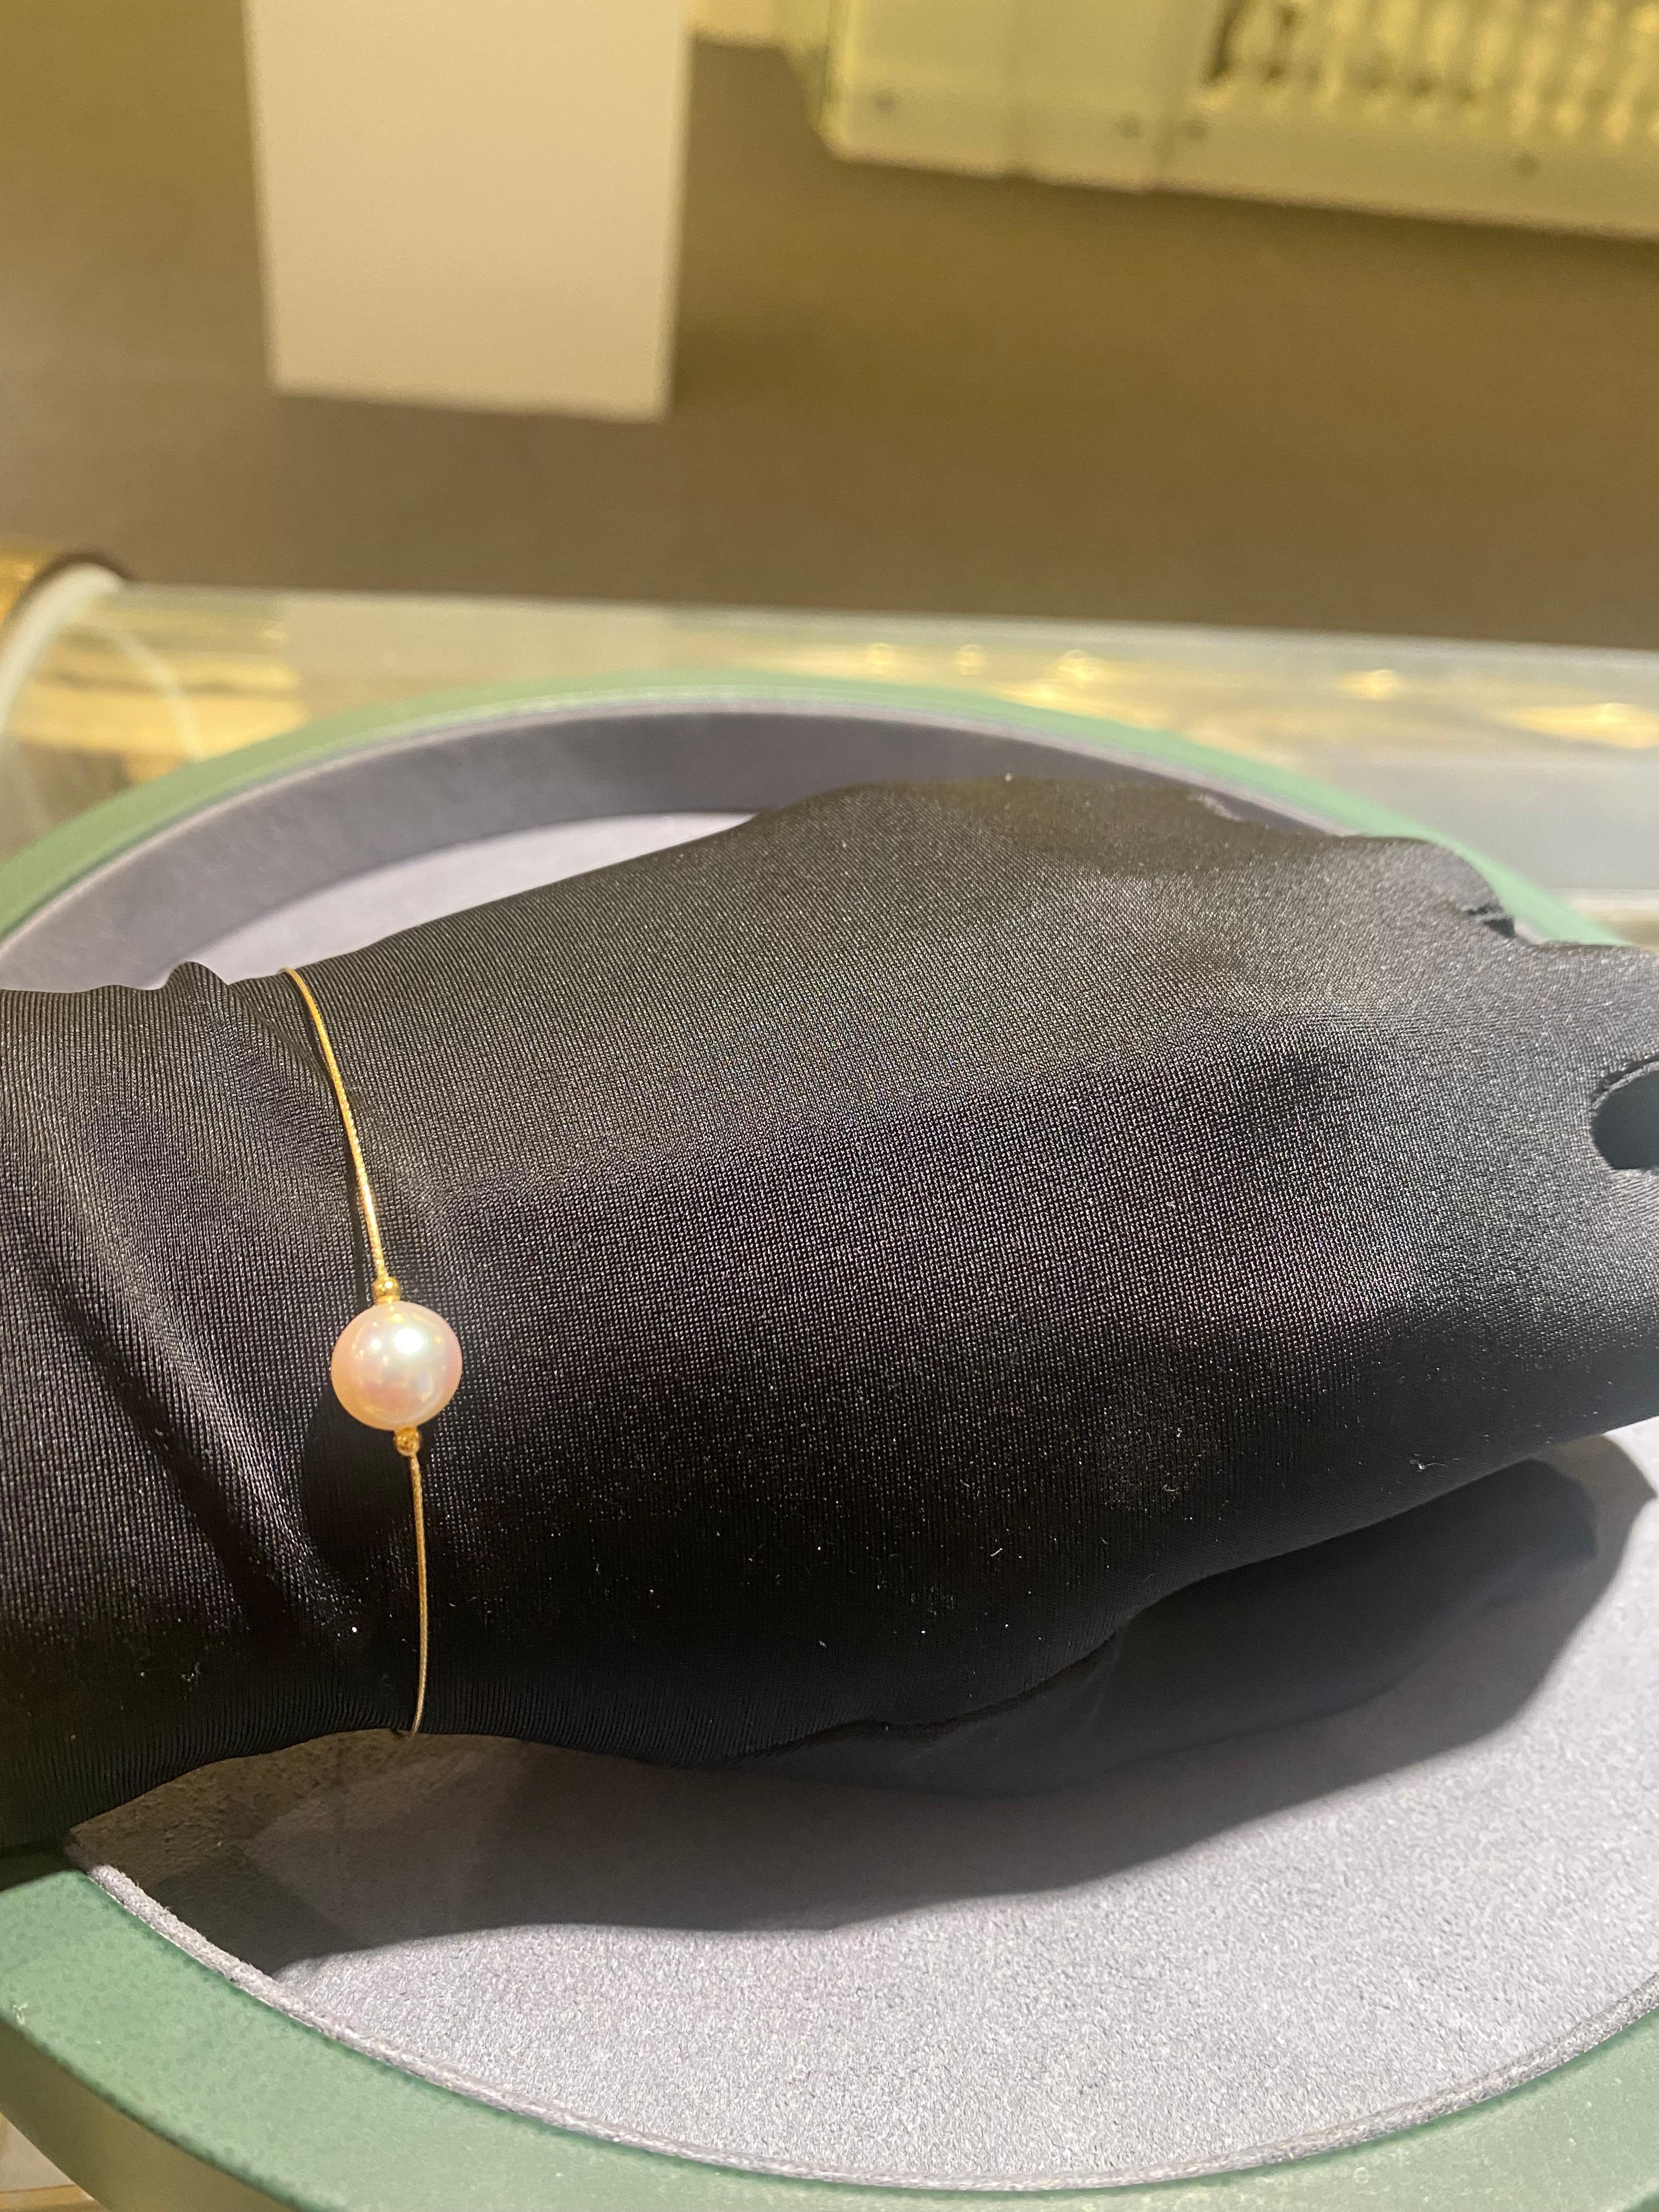 Un bracelet en or jaune 18k avec une perle Akoya de 8,7 mm fixée au milieu. La longueur du bracelet est réglable grâce à la chaîne attachée au bracelet.

La perle d'Akoya est de couleur blanche avec des nuances de rose, la surface de la perle est